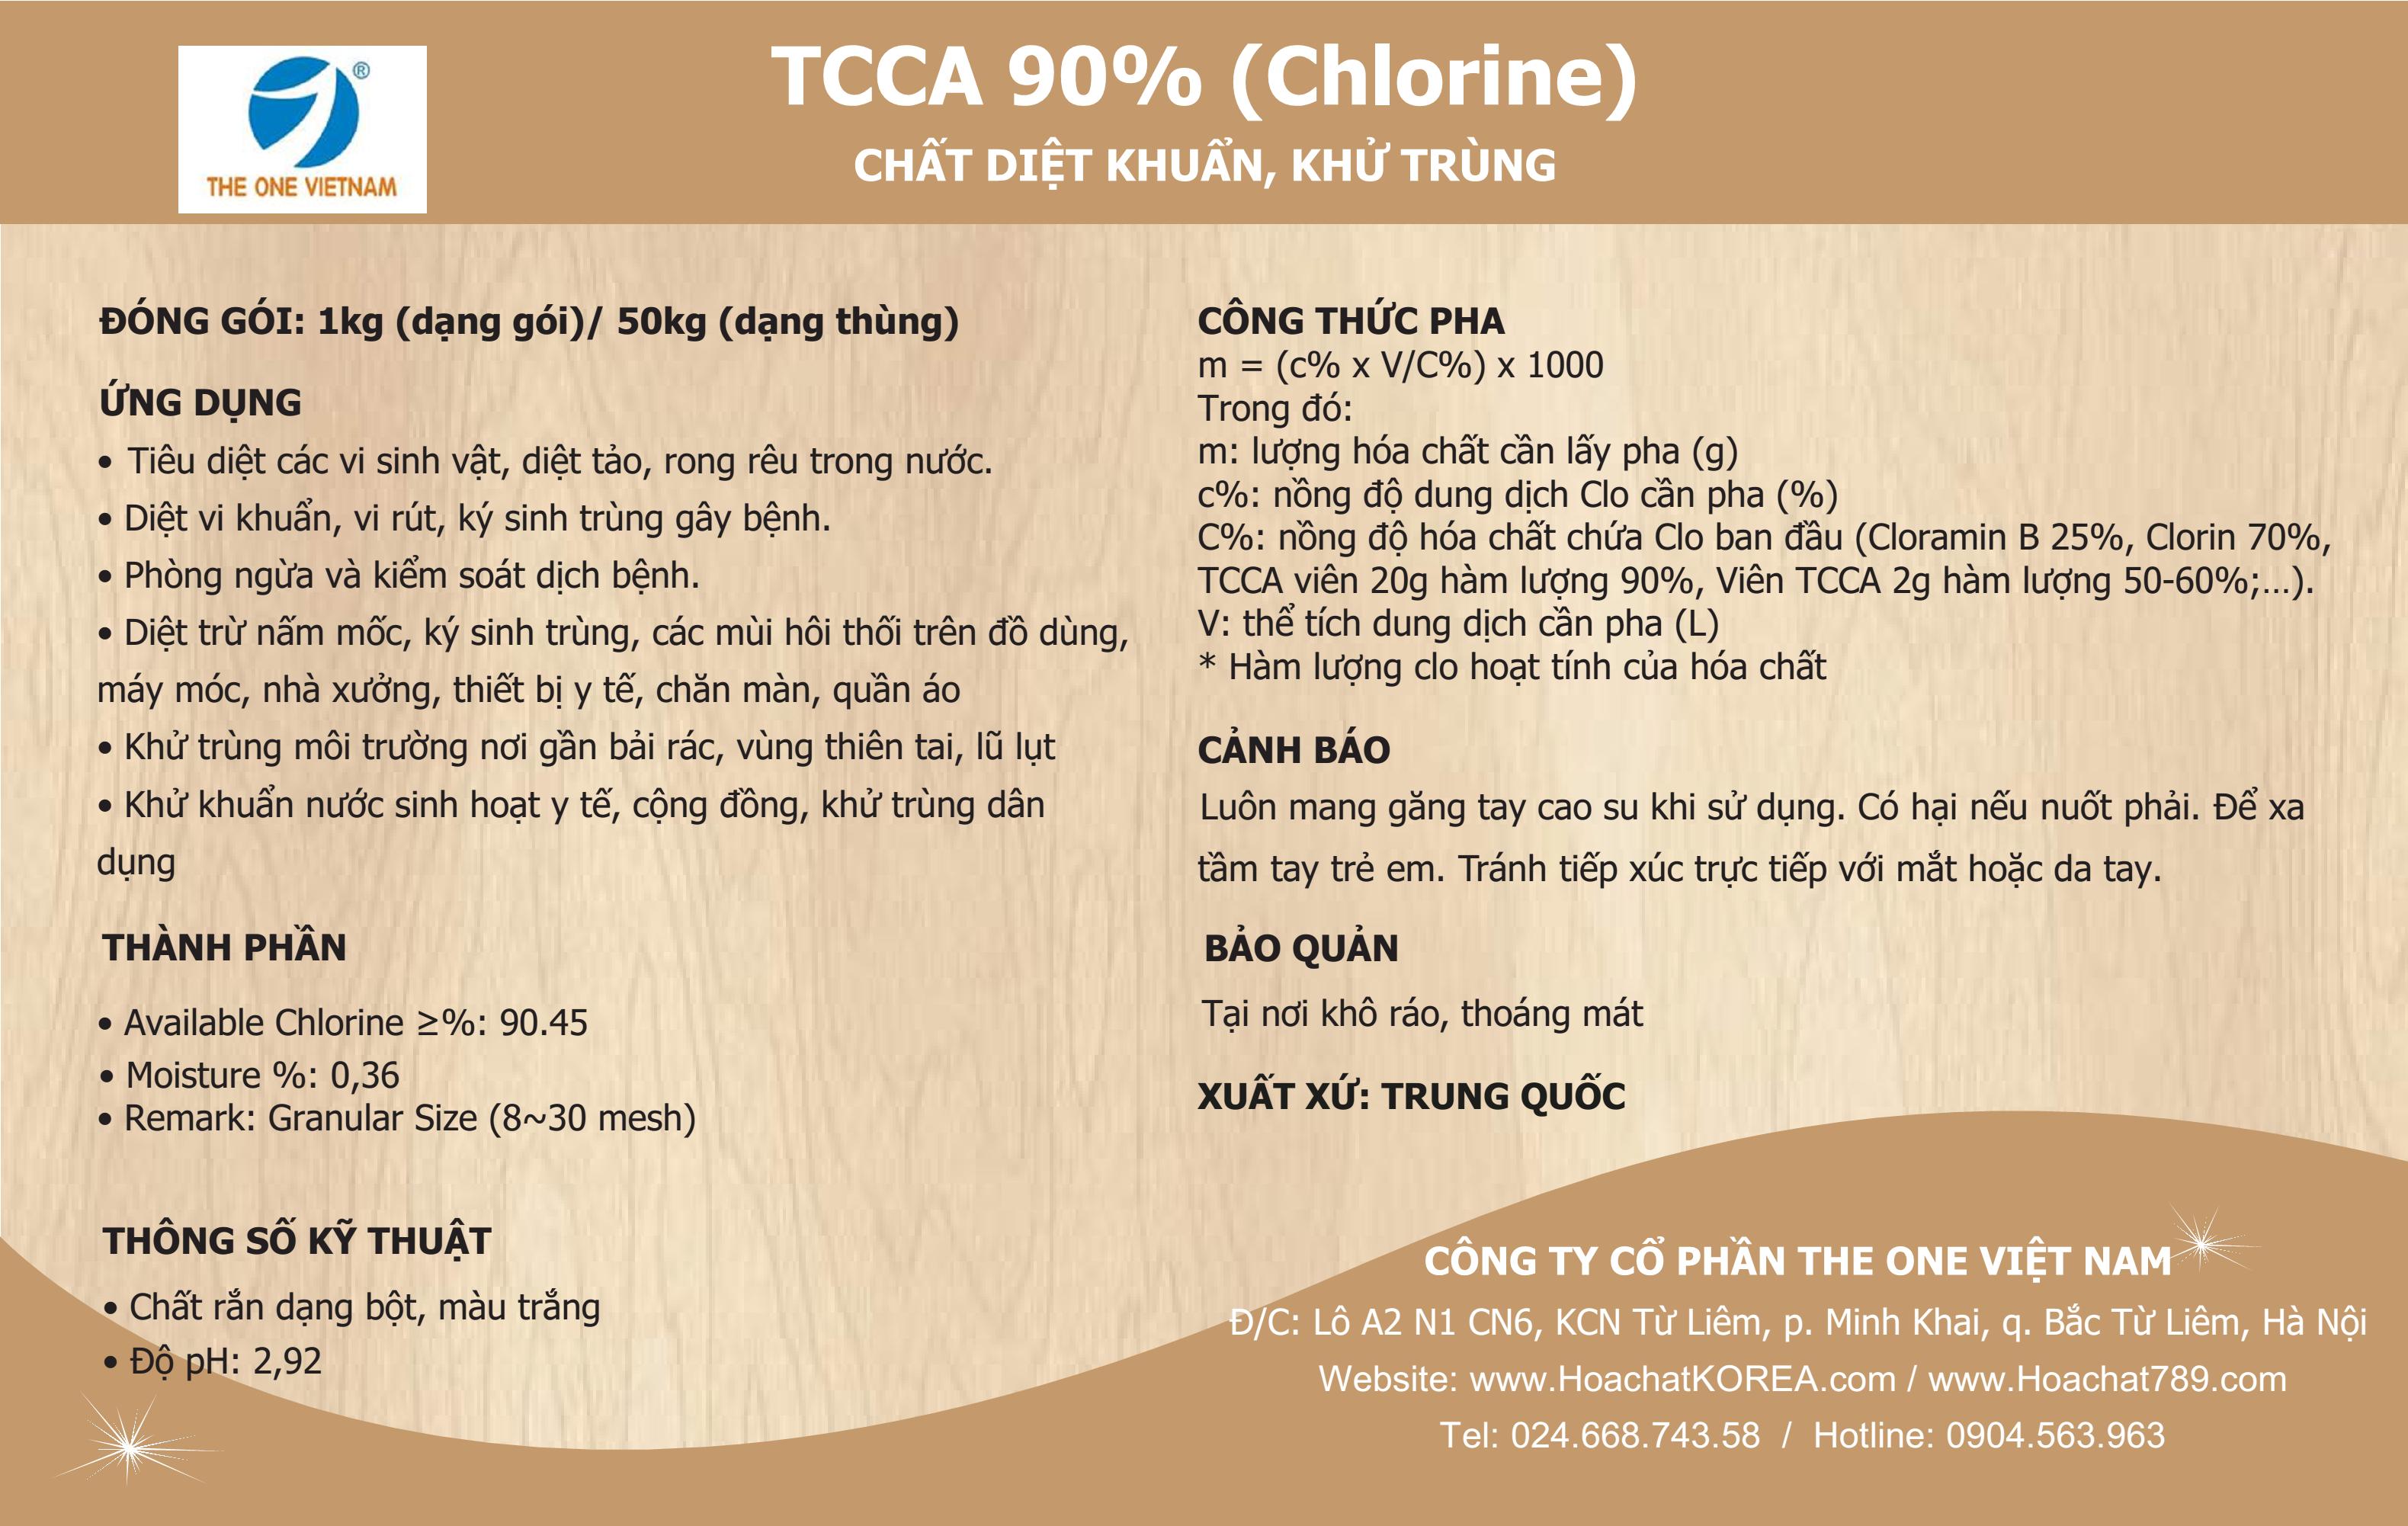 MSDS của TCCA 90% hay còn gọi là Trichloroisocyanuric Acid